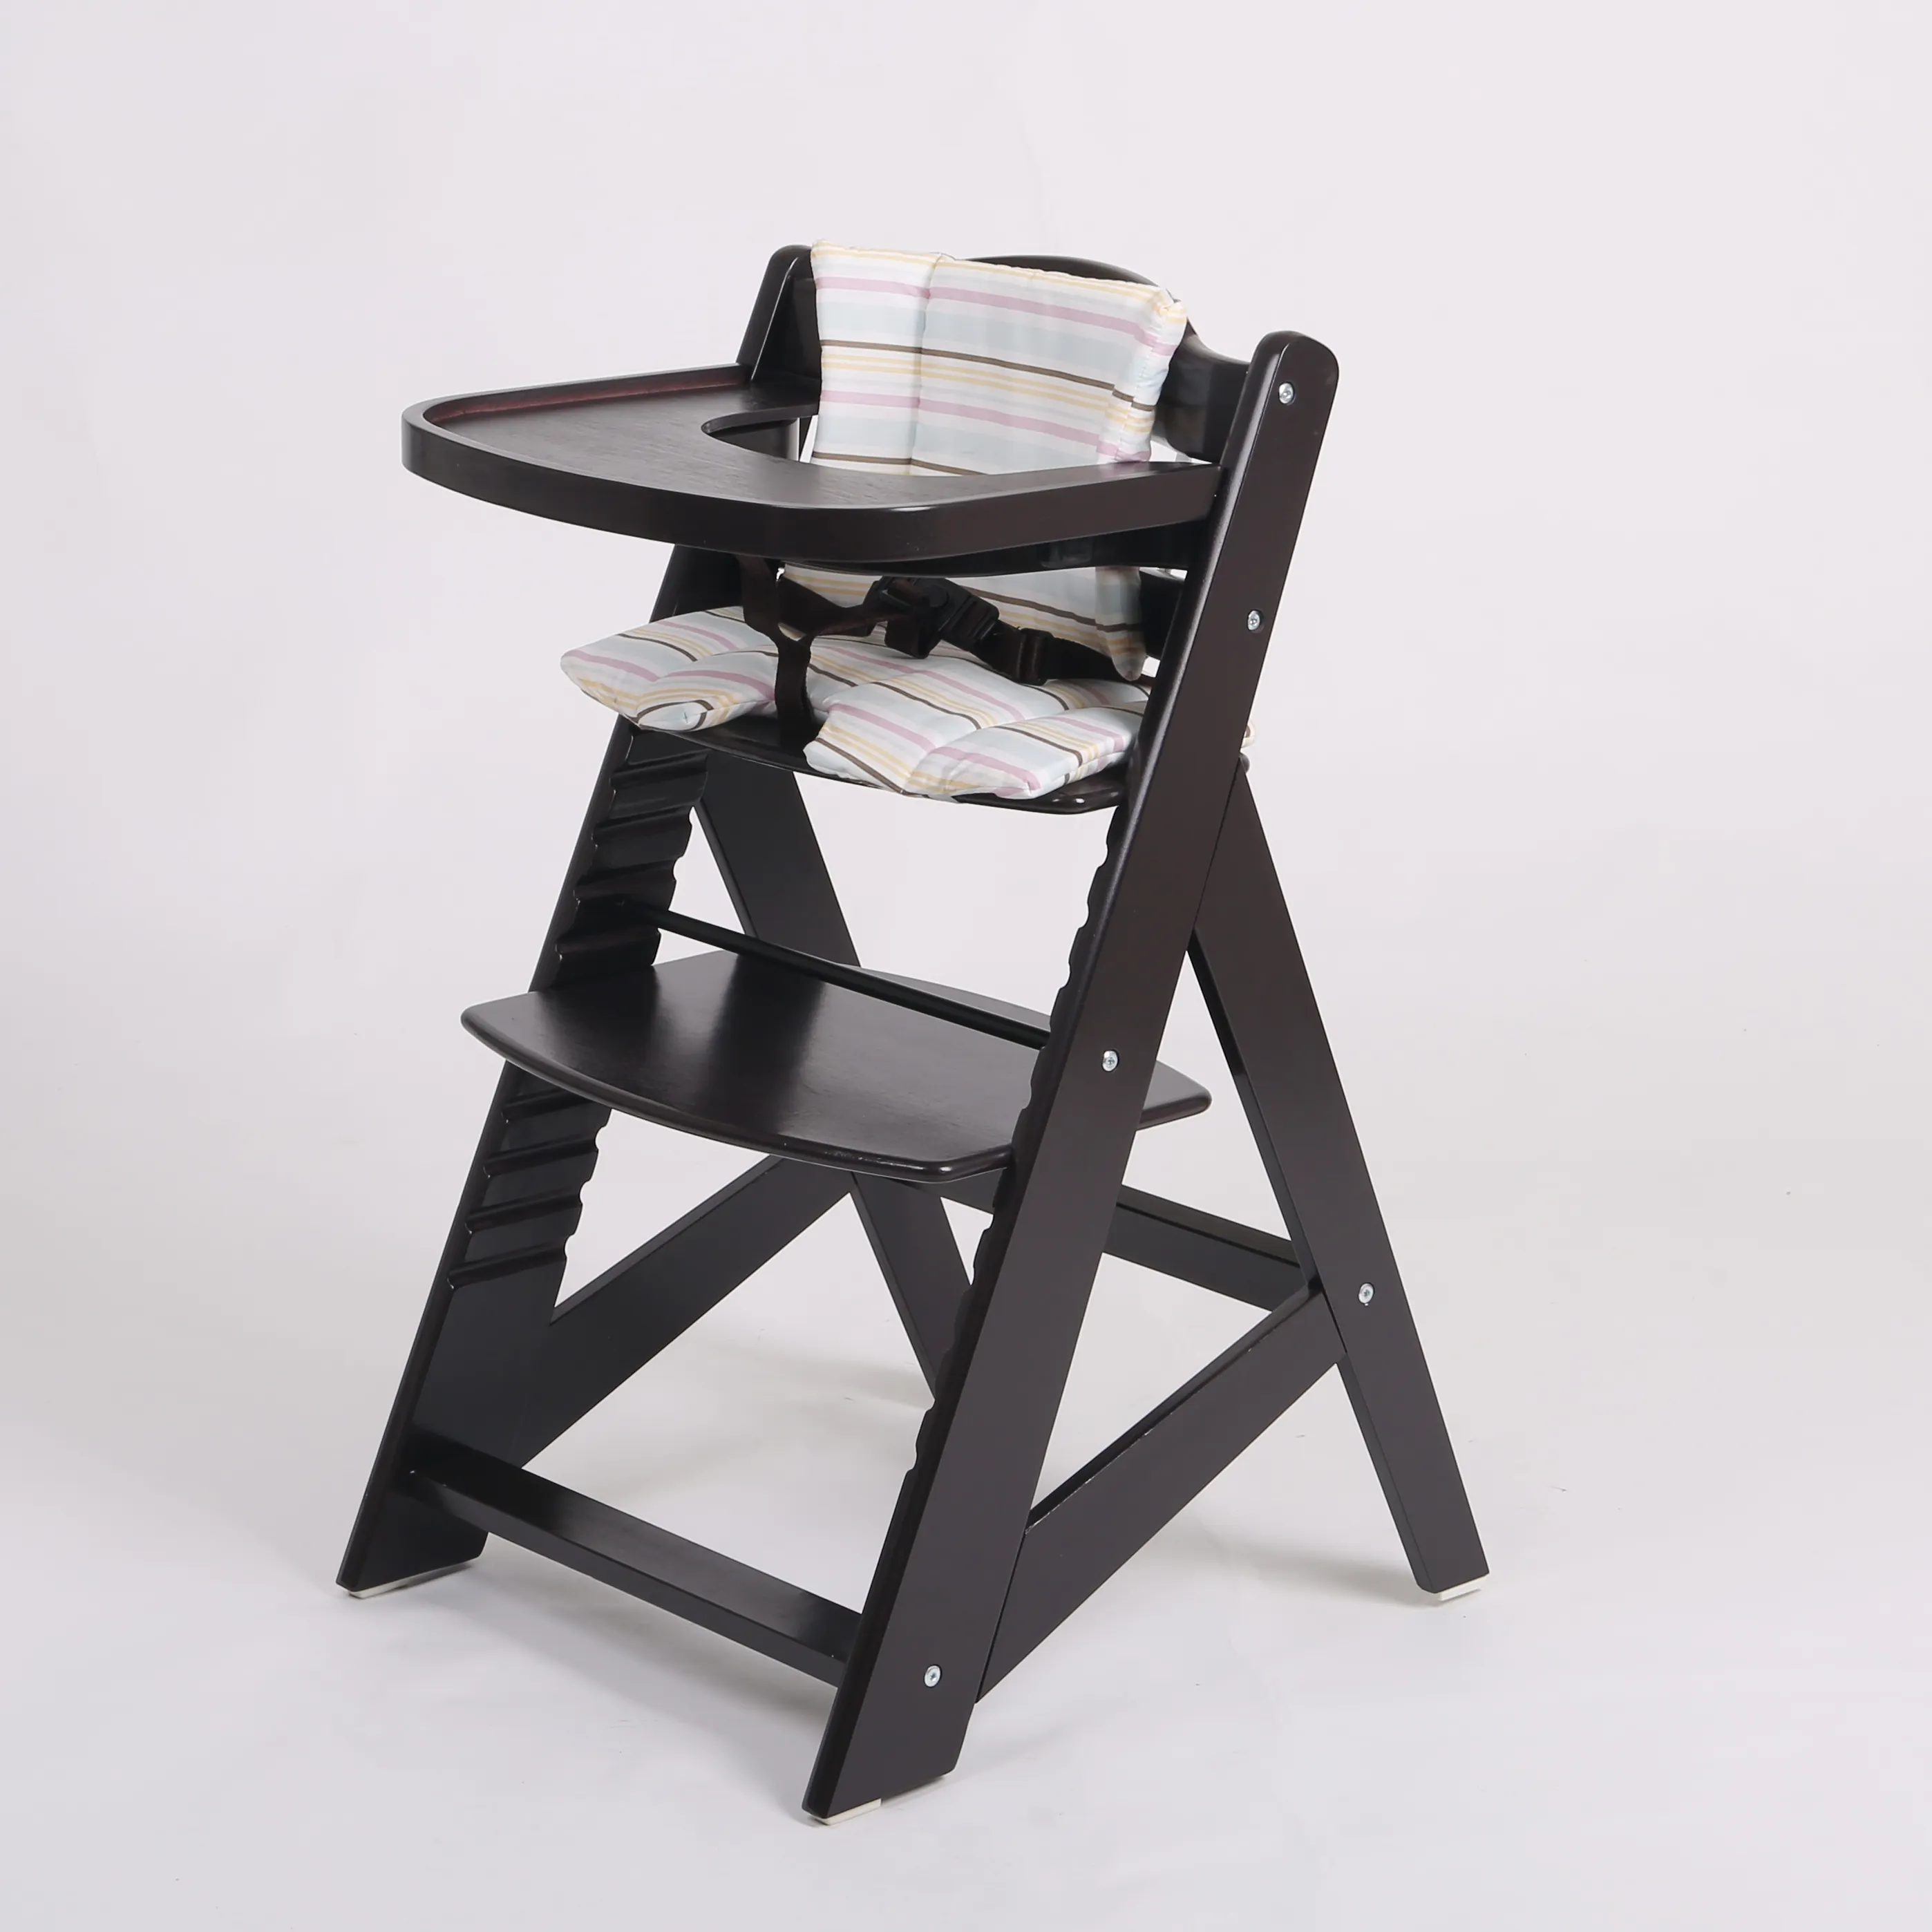 Silla alta de madera con bandeja de alimentación y cojín de asiento, alta silla de bebé estándar europeo para restaurantes